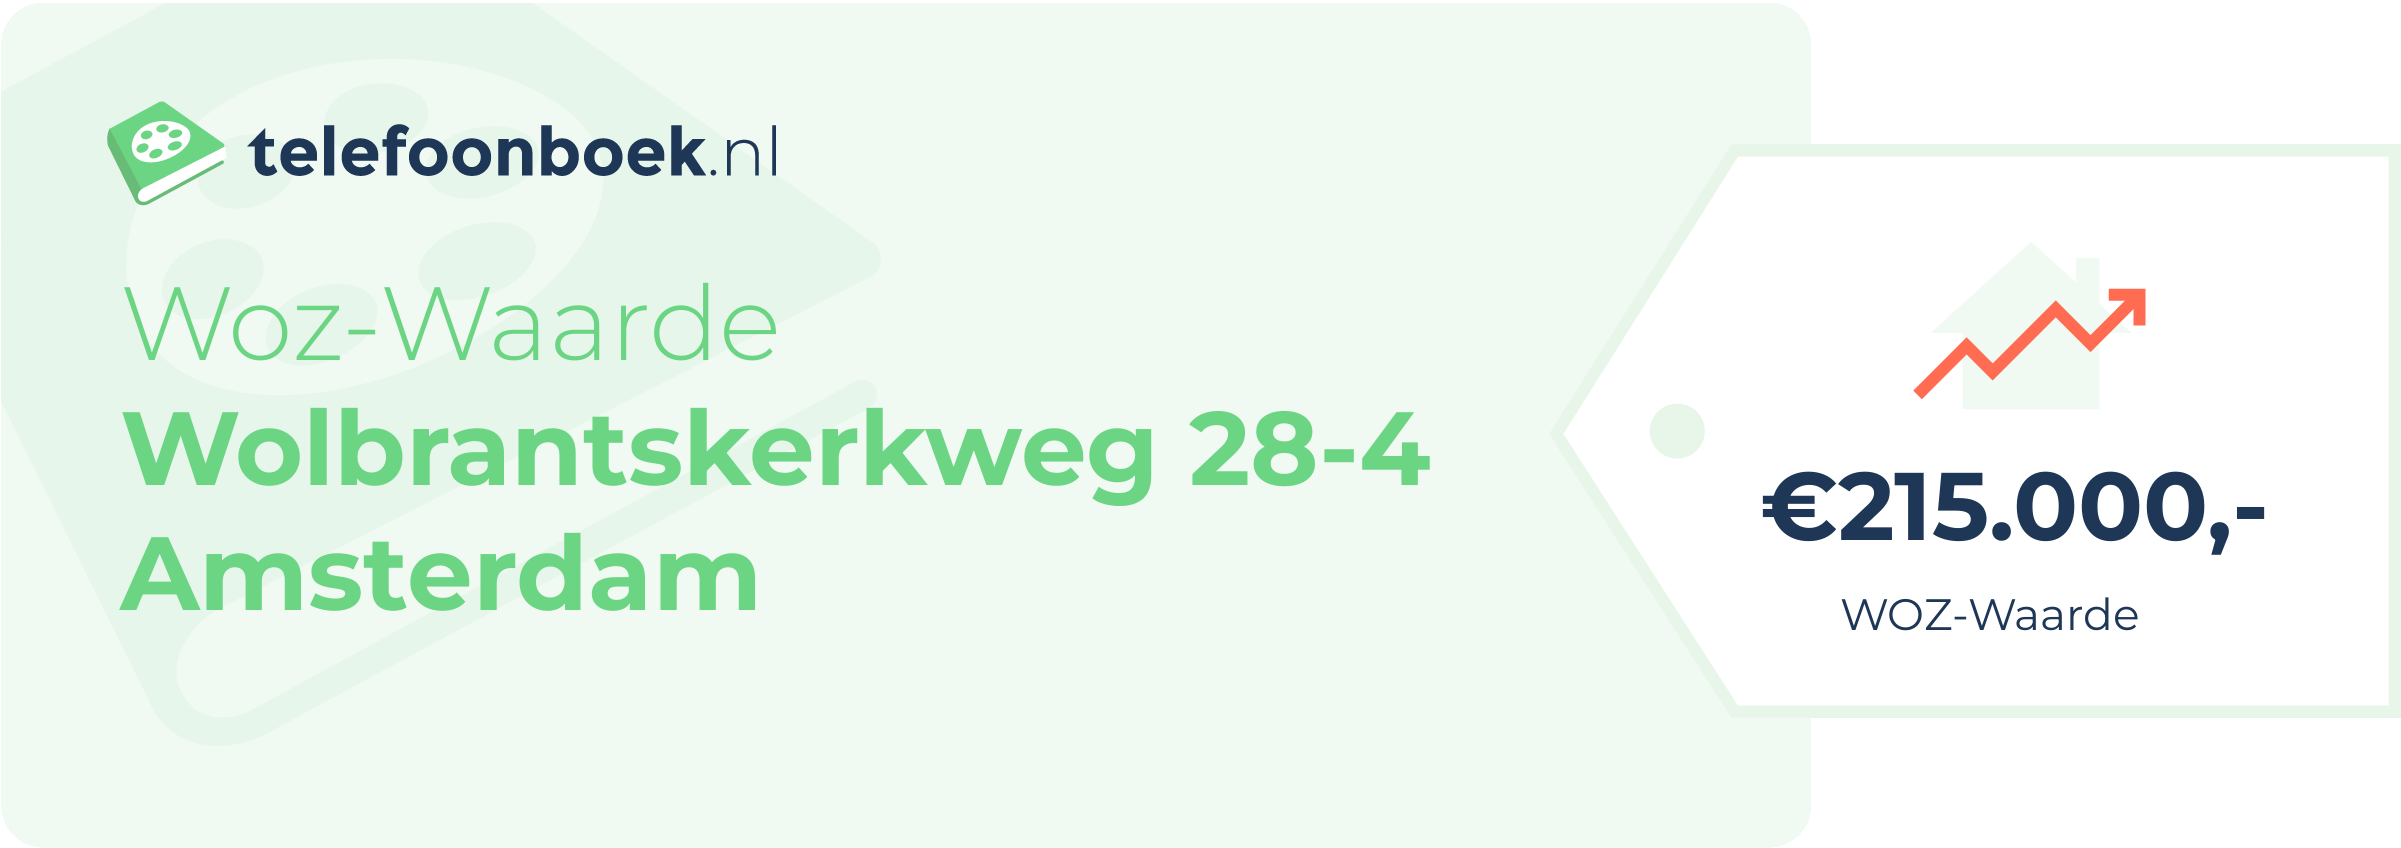 WOZ-waarde Wolbrantskerkweg 28-4 Amsterdam